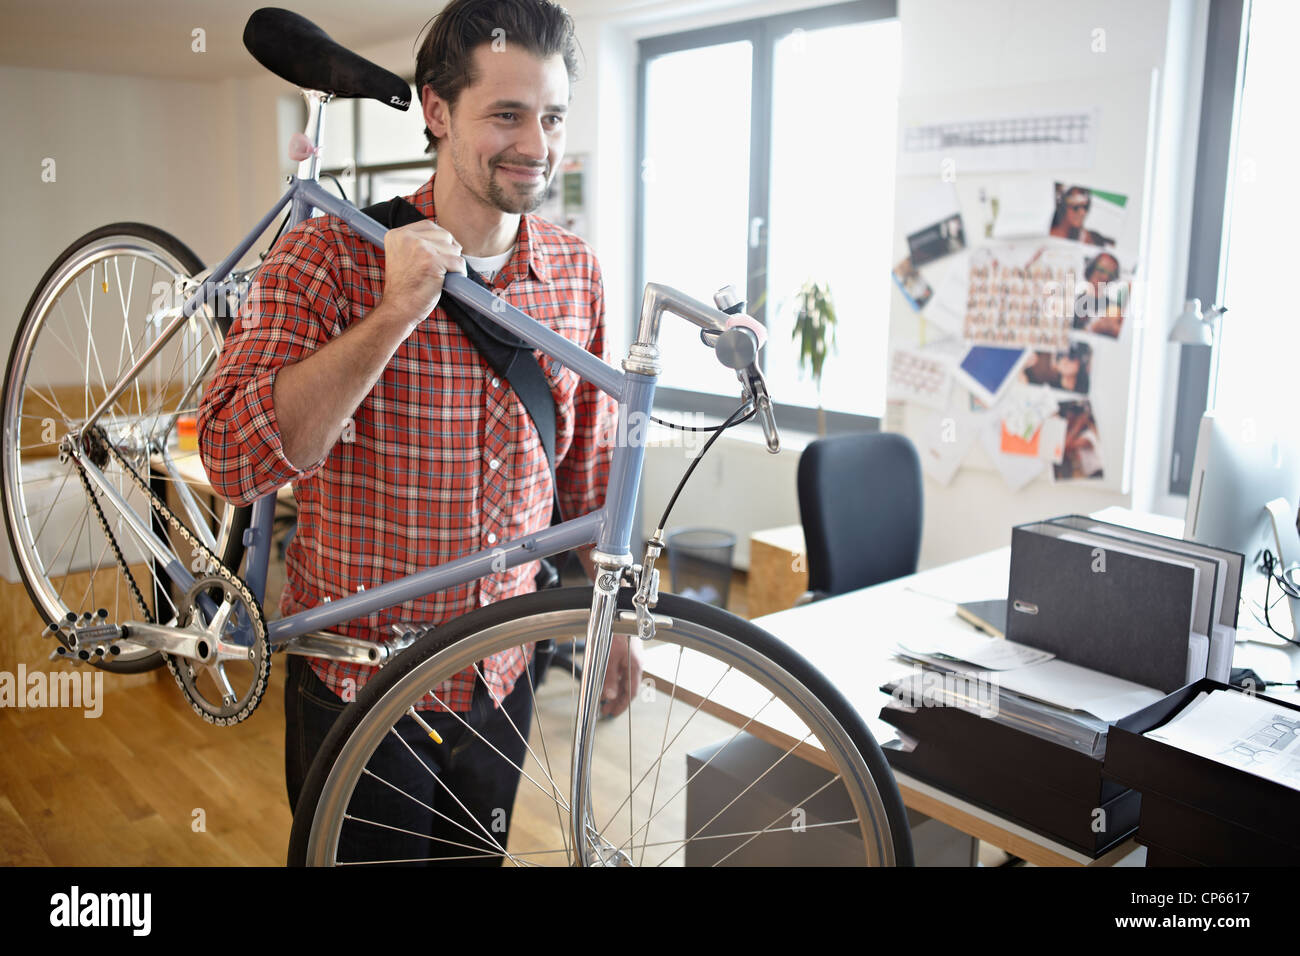 Germania, Colonia, metà uomo adulto che porta bicicletta, sorridente Foto Stock